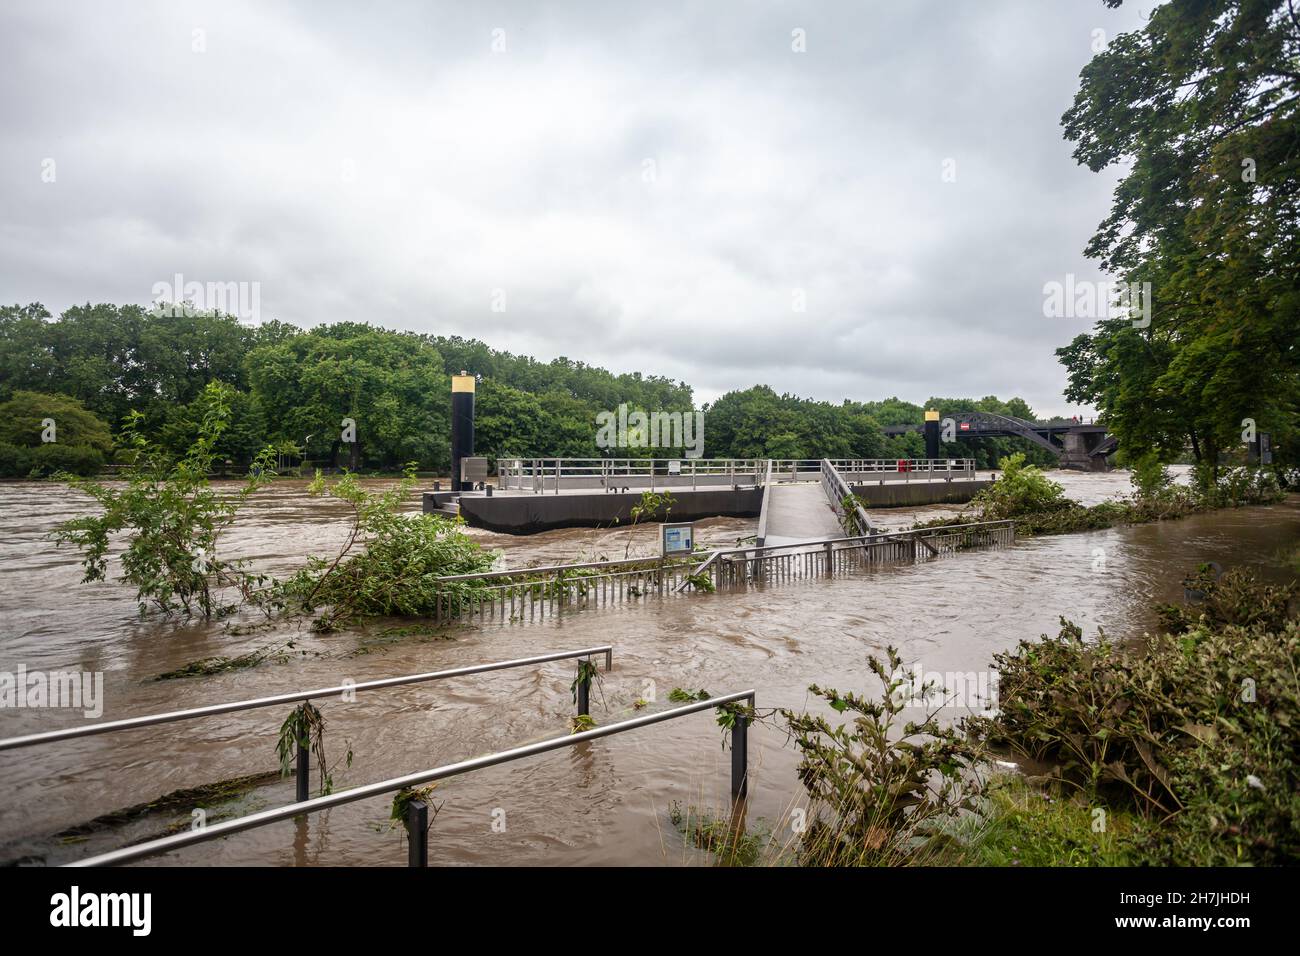 Germania - 16.7.2021: Inondazioni in Germania a causa di forti piogge Foto Stock